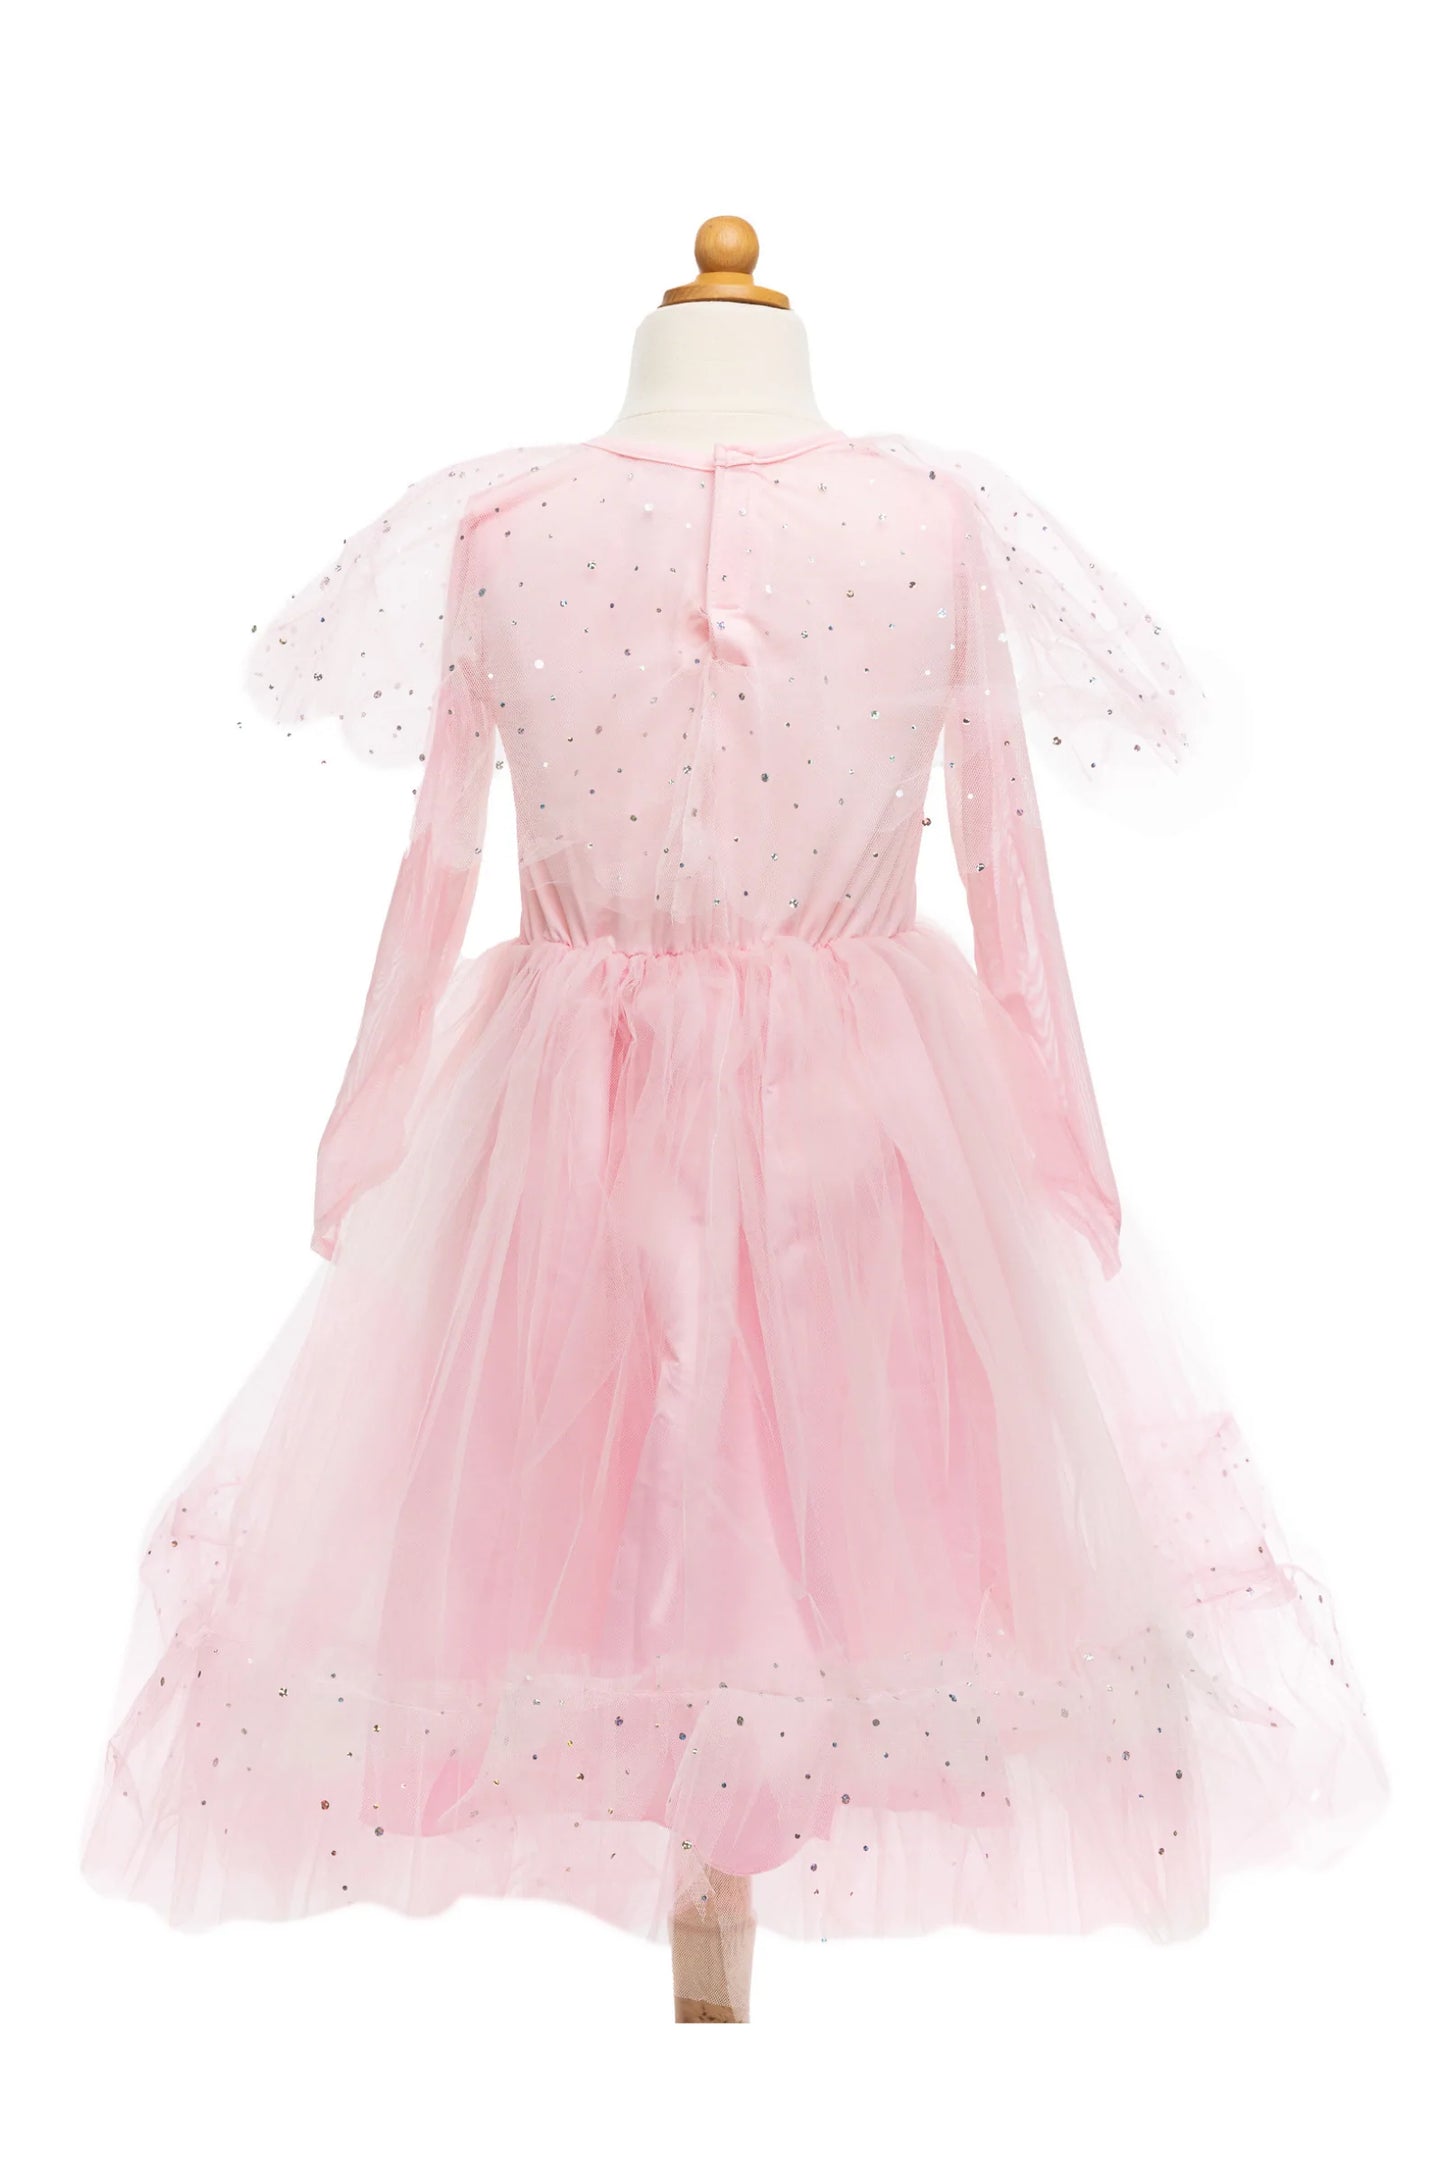 Dress Up - Elegant in Pink